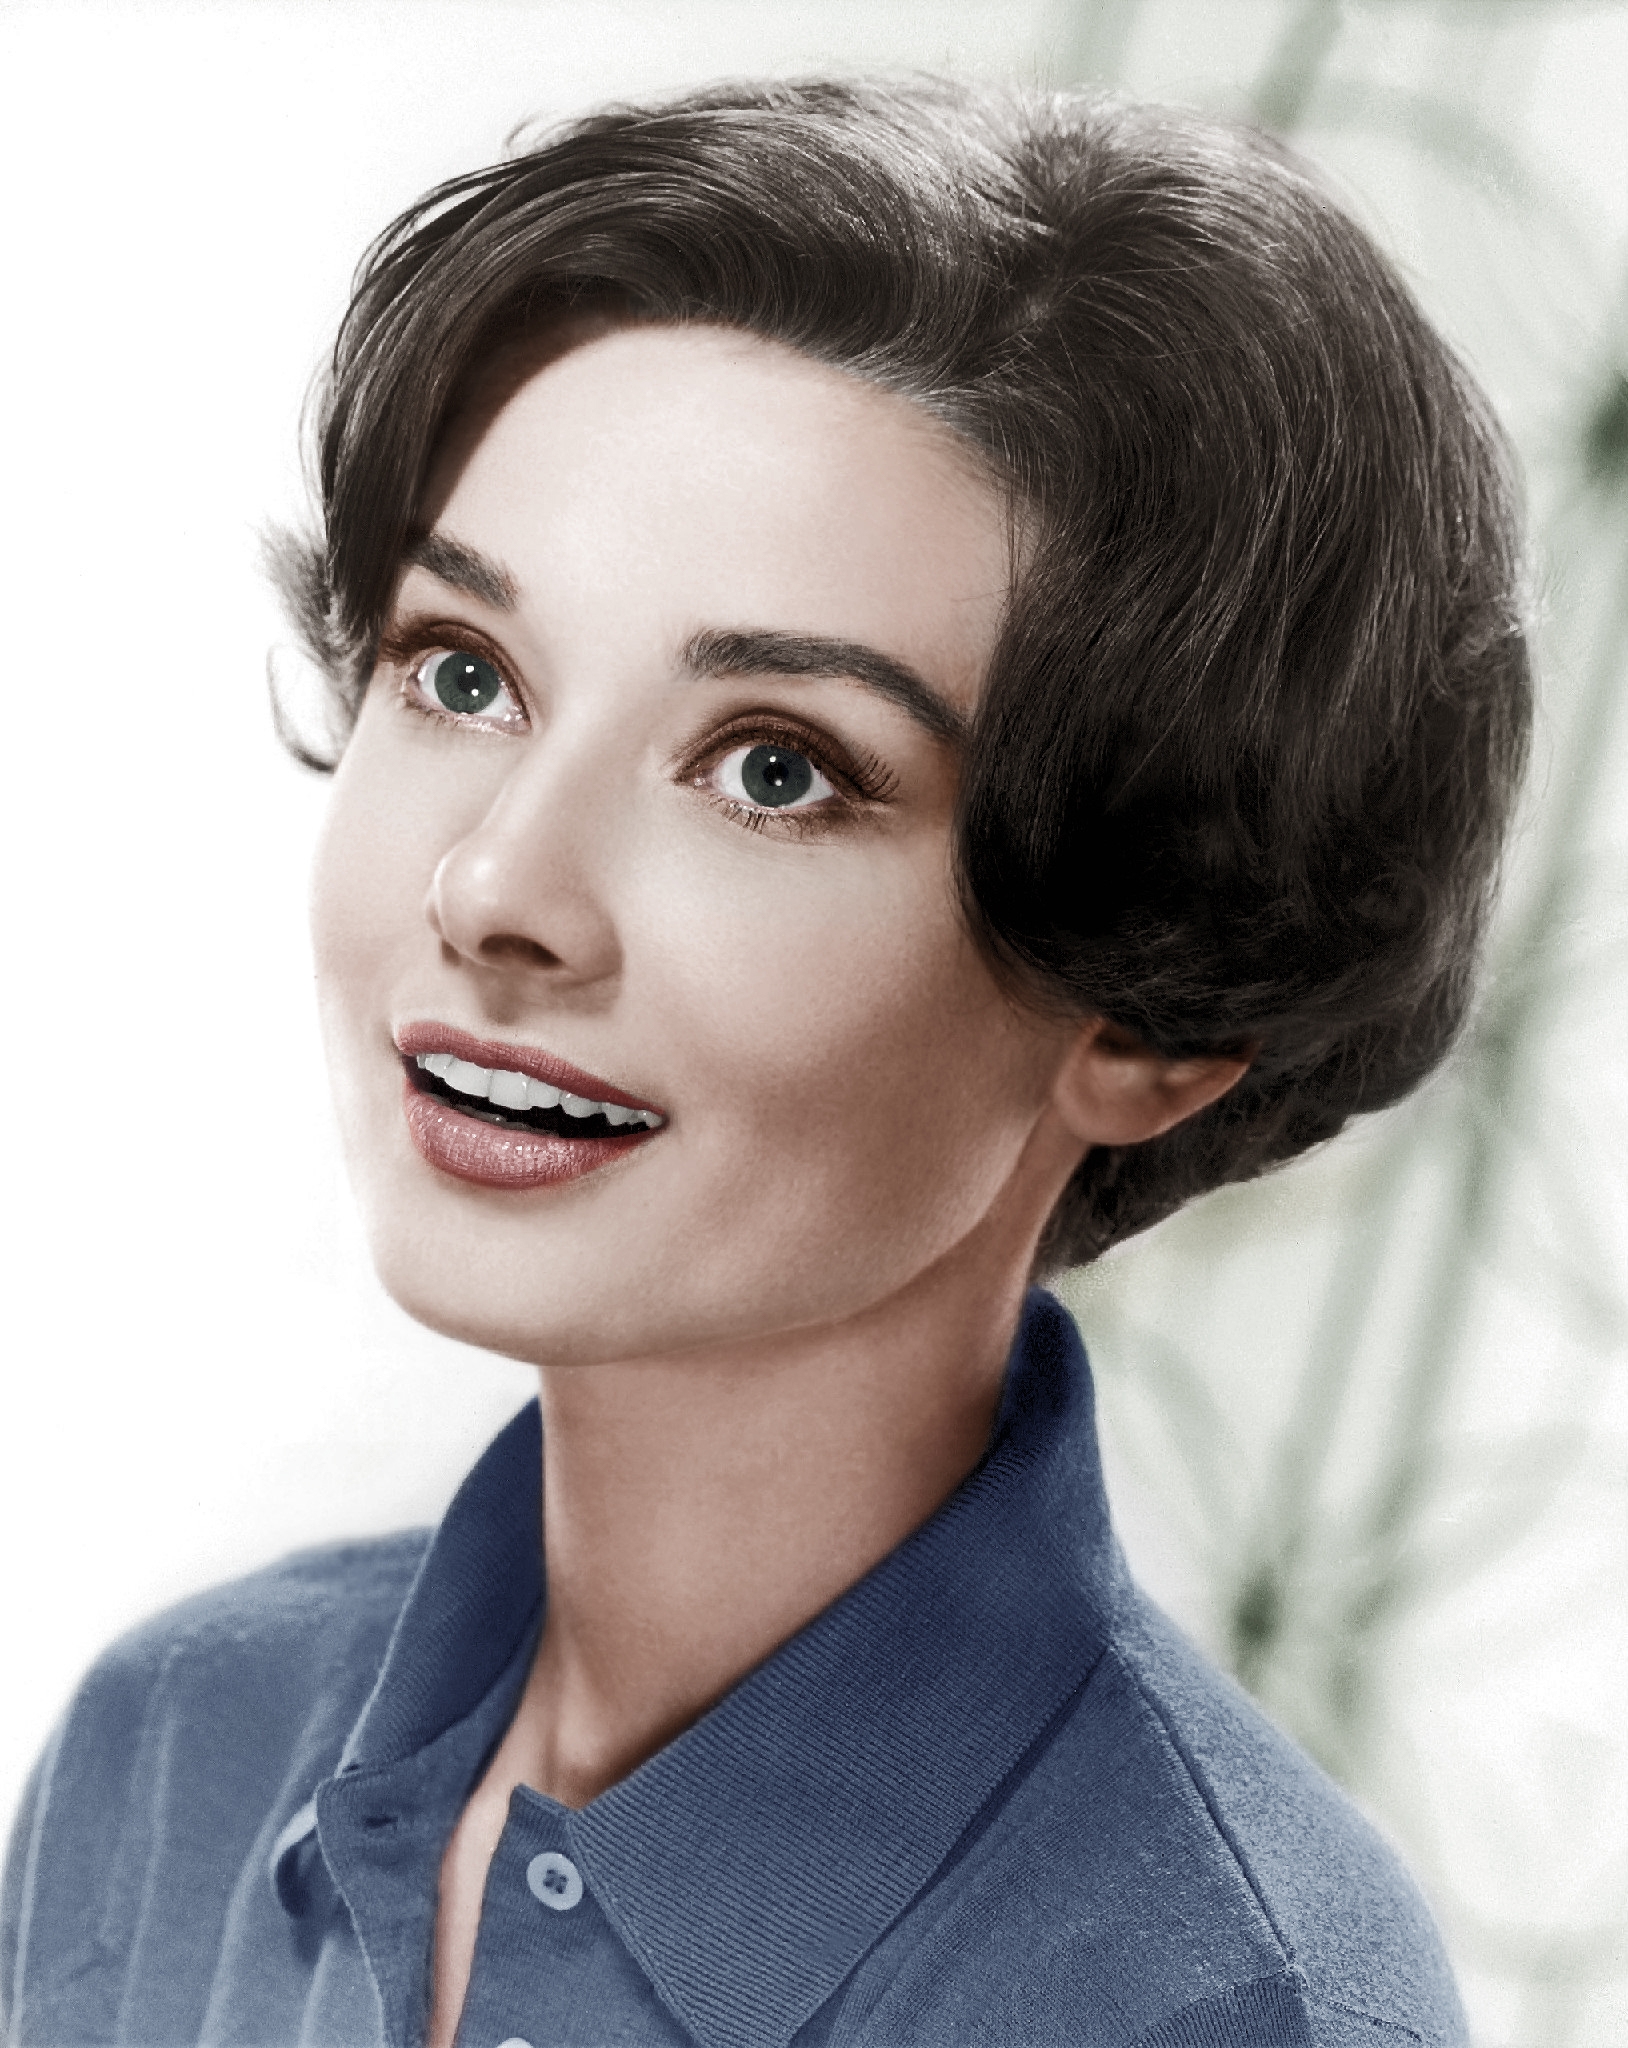 auteur Audrey Hepburn de la citation La meilleure chose à retenir dans la vie est les uns des autres.